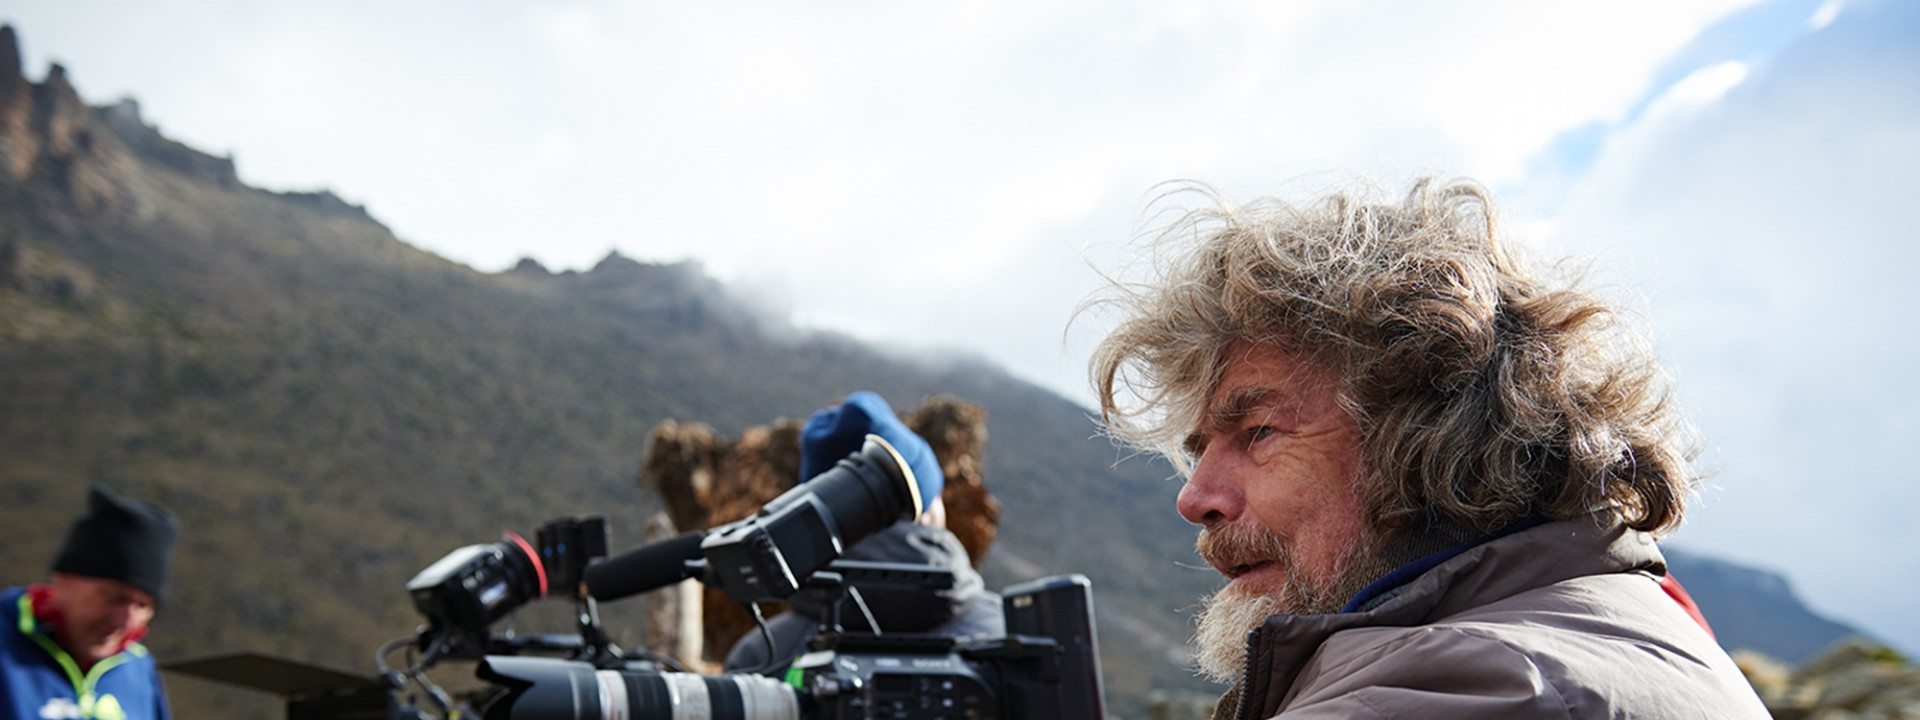 A Milano si proiettano due film di Reinhold Messner